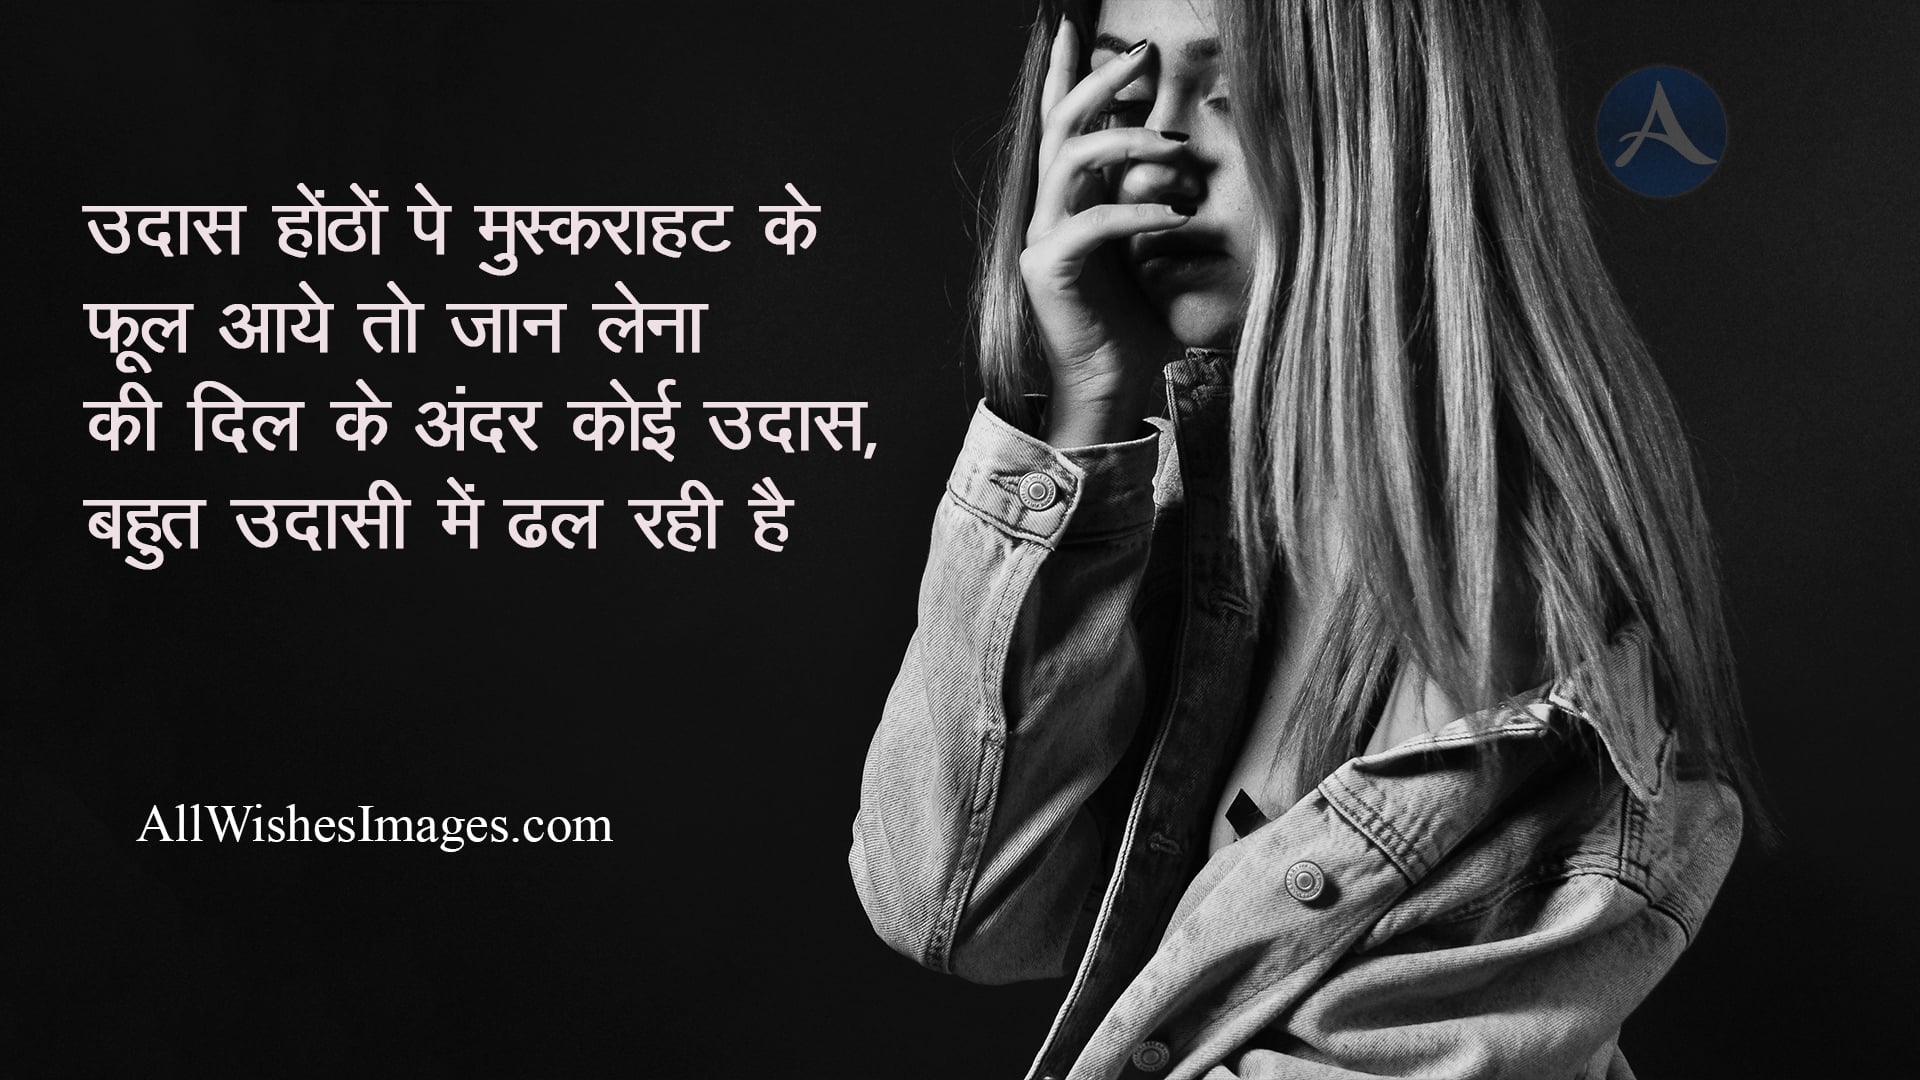 Sad Images With Shayari For Facebook (2022) || Sad Shayari For Facebook in  Hindi